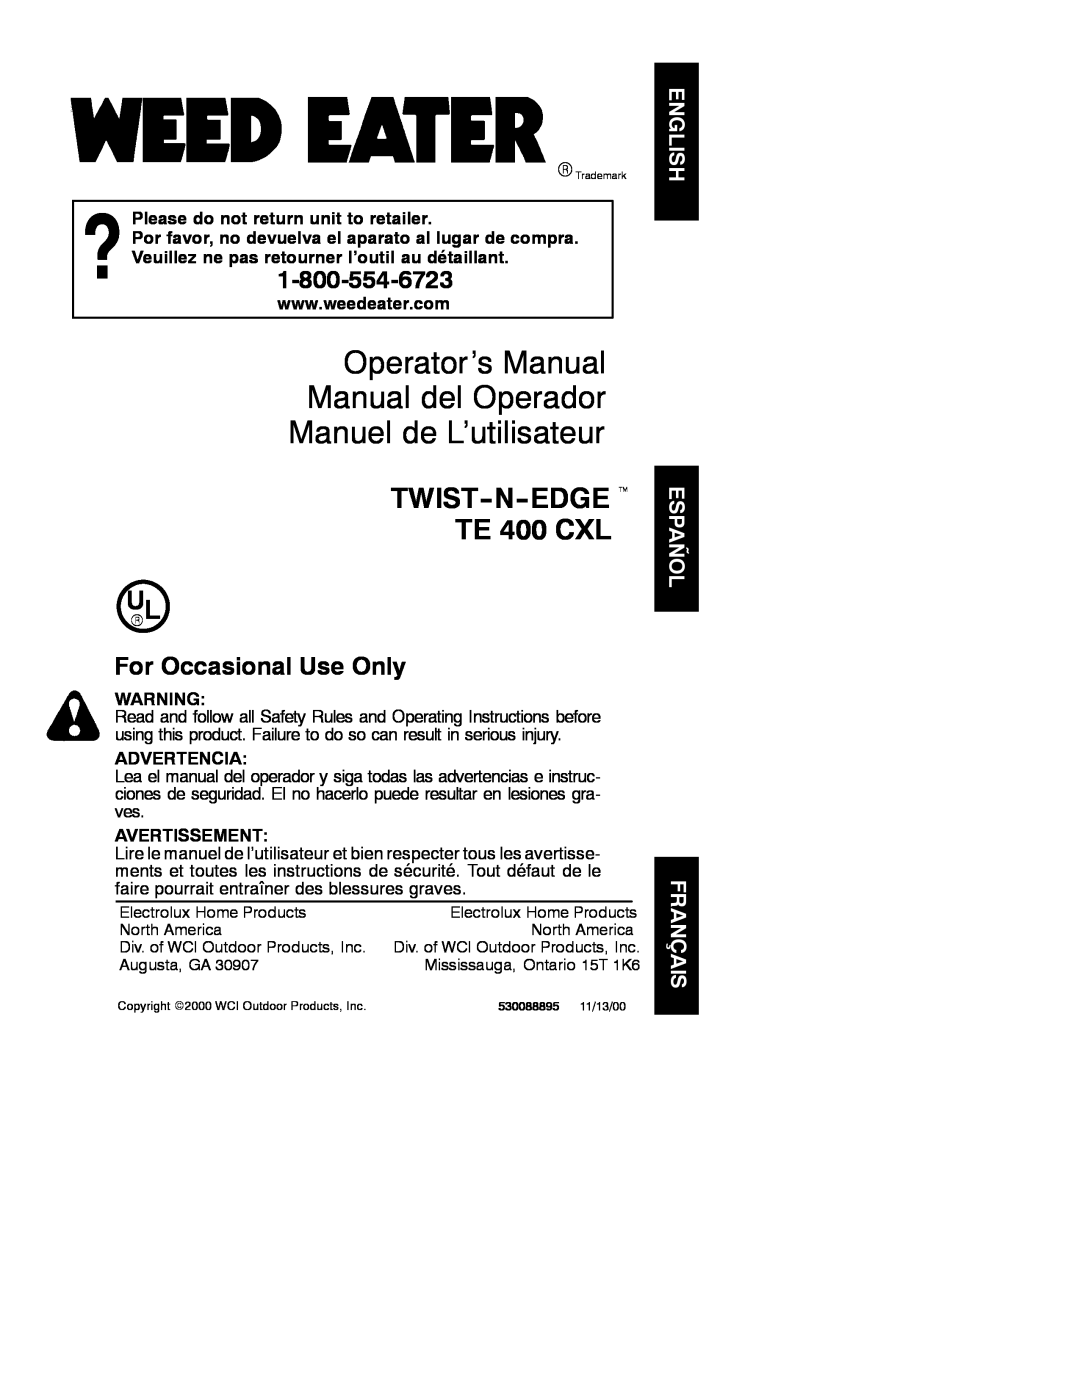 Weed Eater 530088895 manual Operator’s Manual Manual del Operador, Manuel de L’utilisateur, TWIST-N-EDGE t TE 400 CXL 